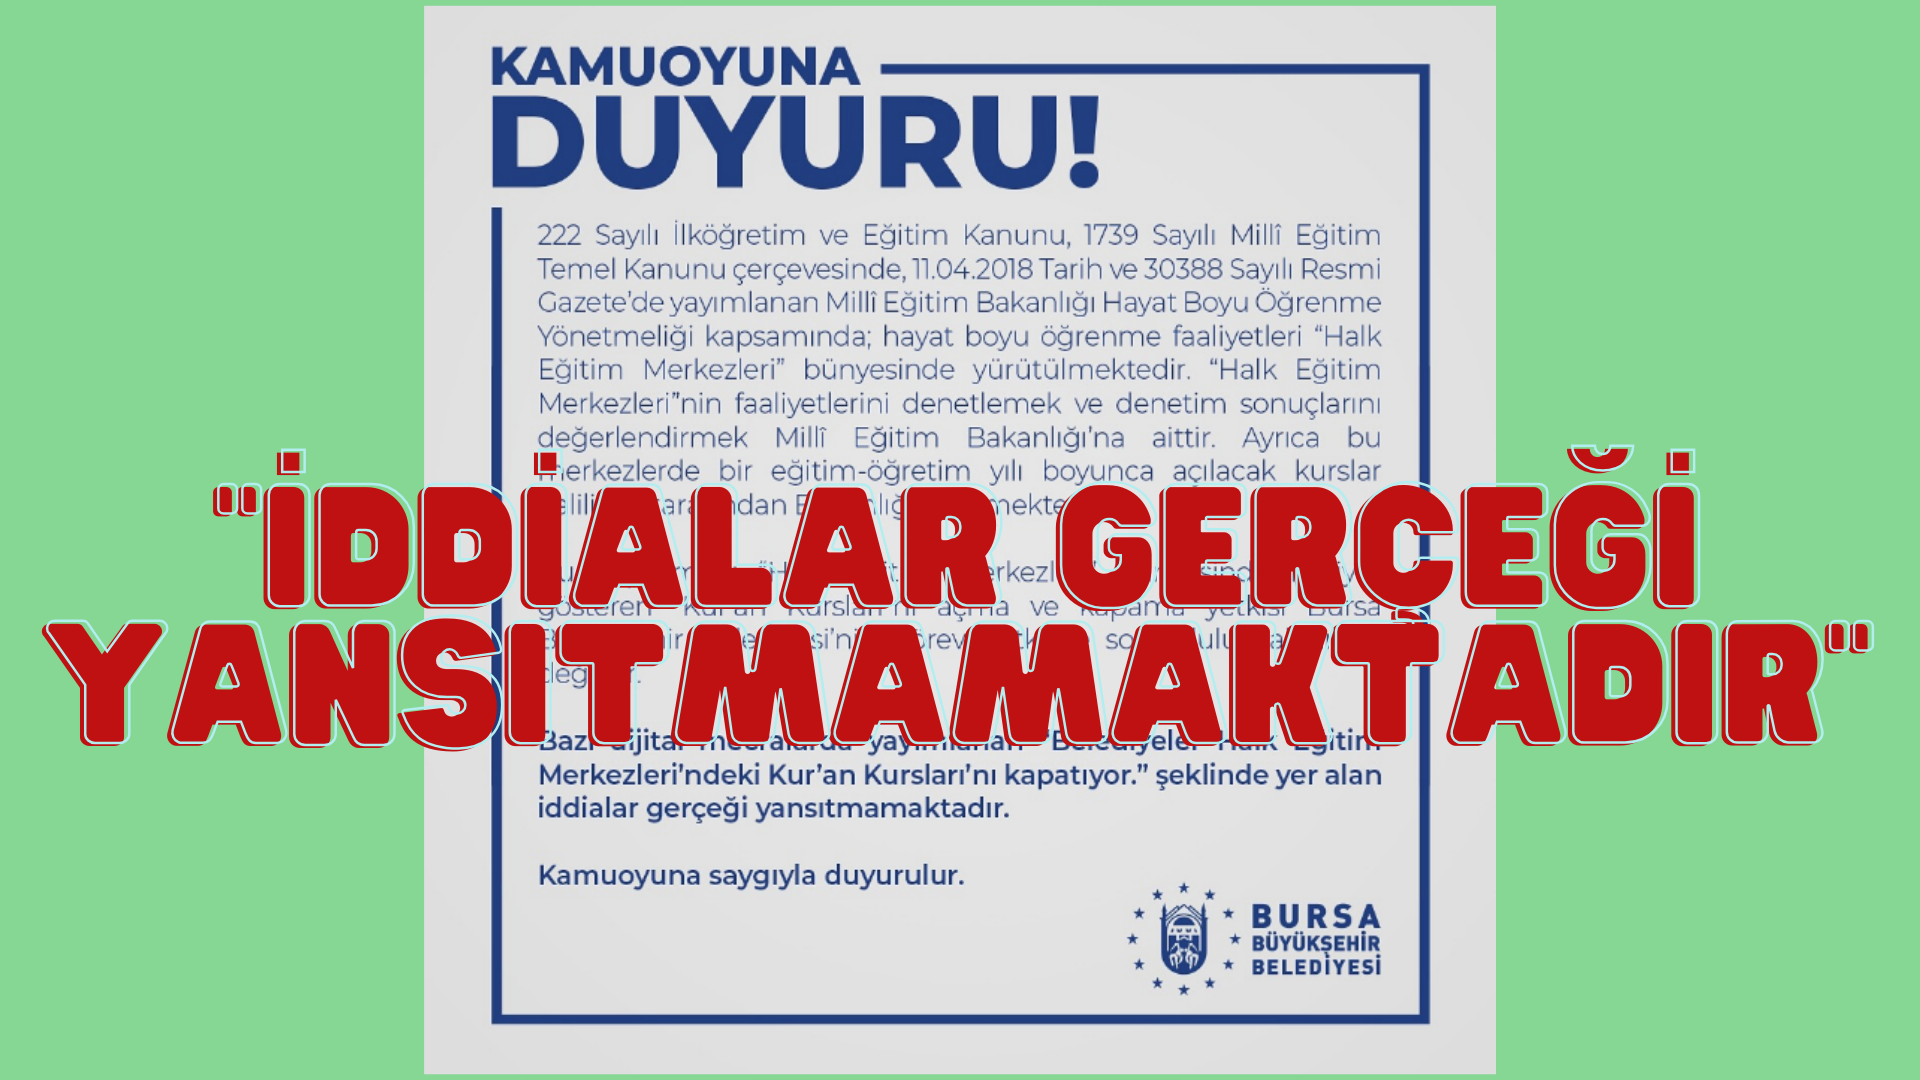 Bursa Büyükşehir Belediyesinden duyuru geldi: ‘Kur’an kurslarını kapatıyor’ paylaşımları gerçeği yansıtmamaktadır